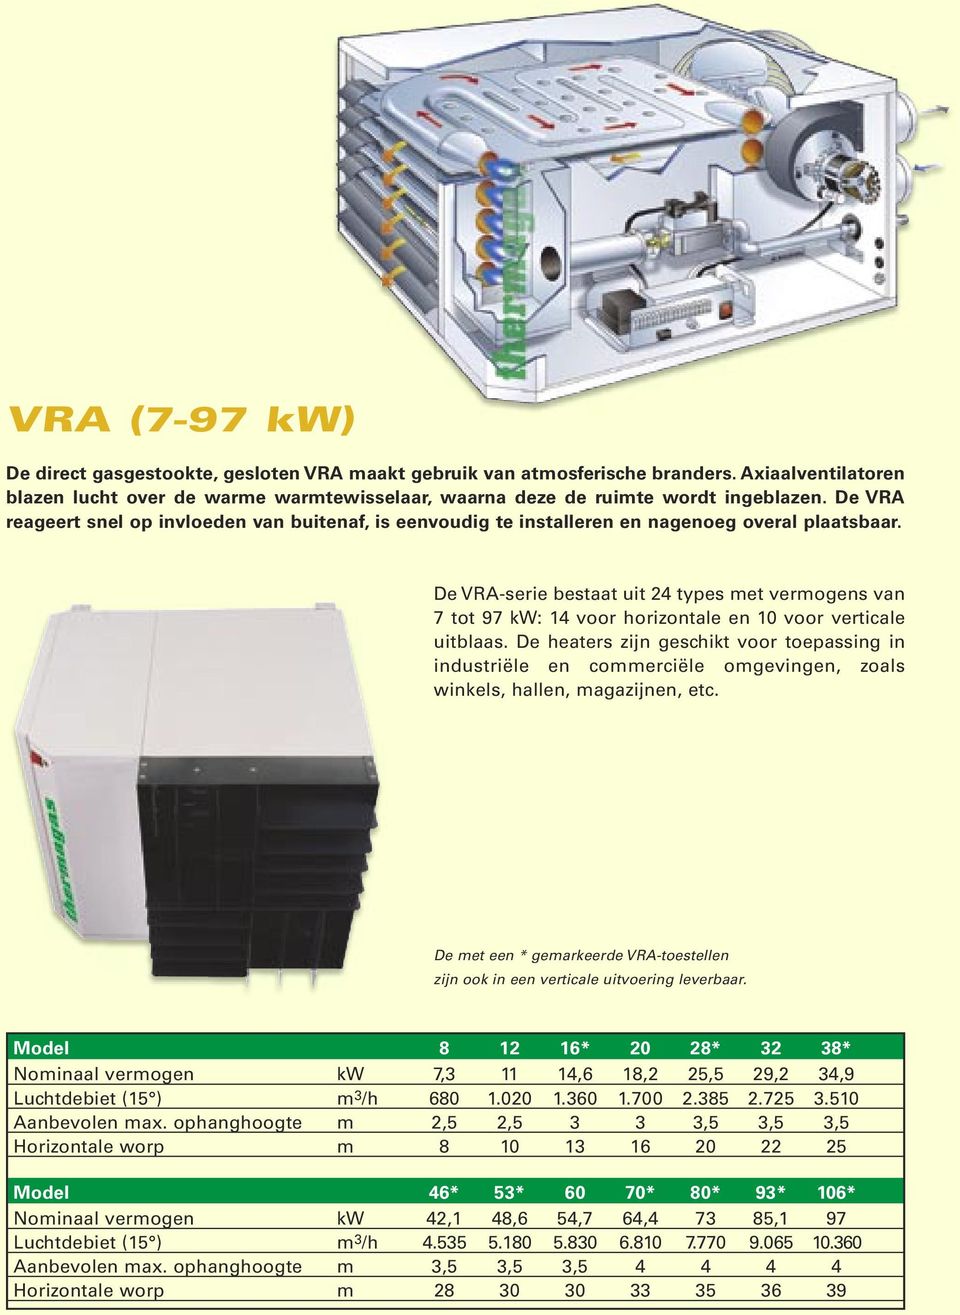 De VRA-serie bestaat uit 24 types met vermogens van 7 tot 97 kw: 14 voor horizontale en 10 voor verticale uitblaas.